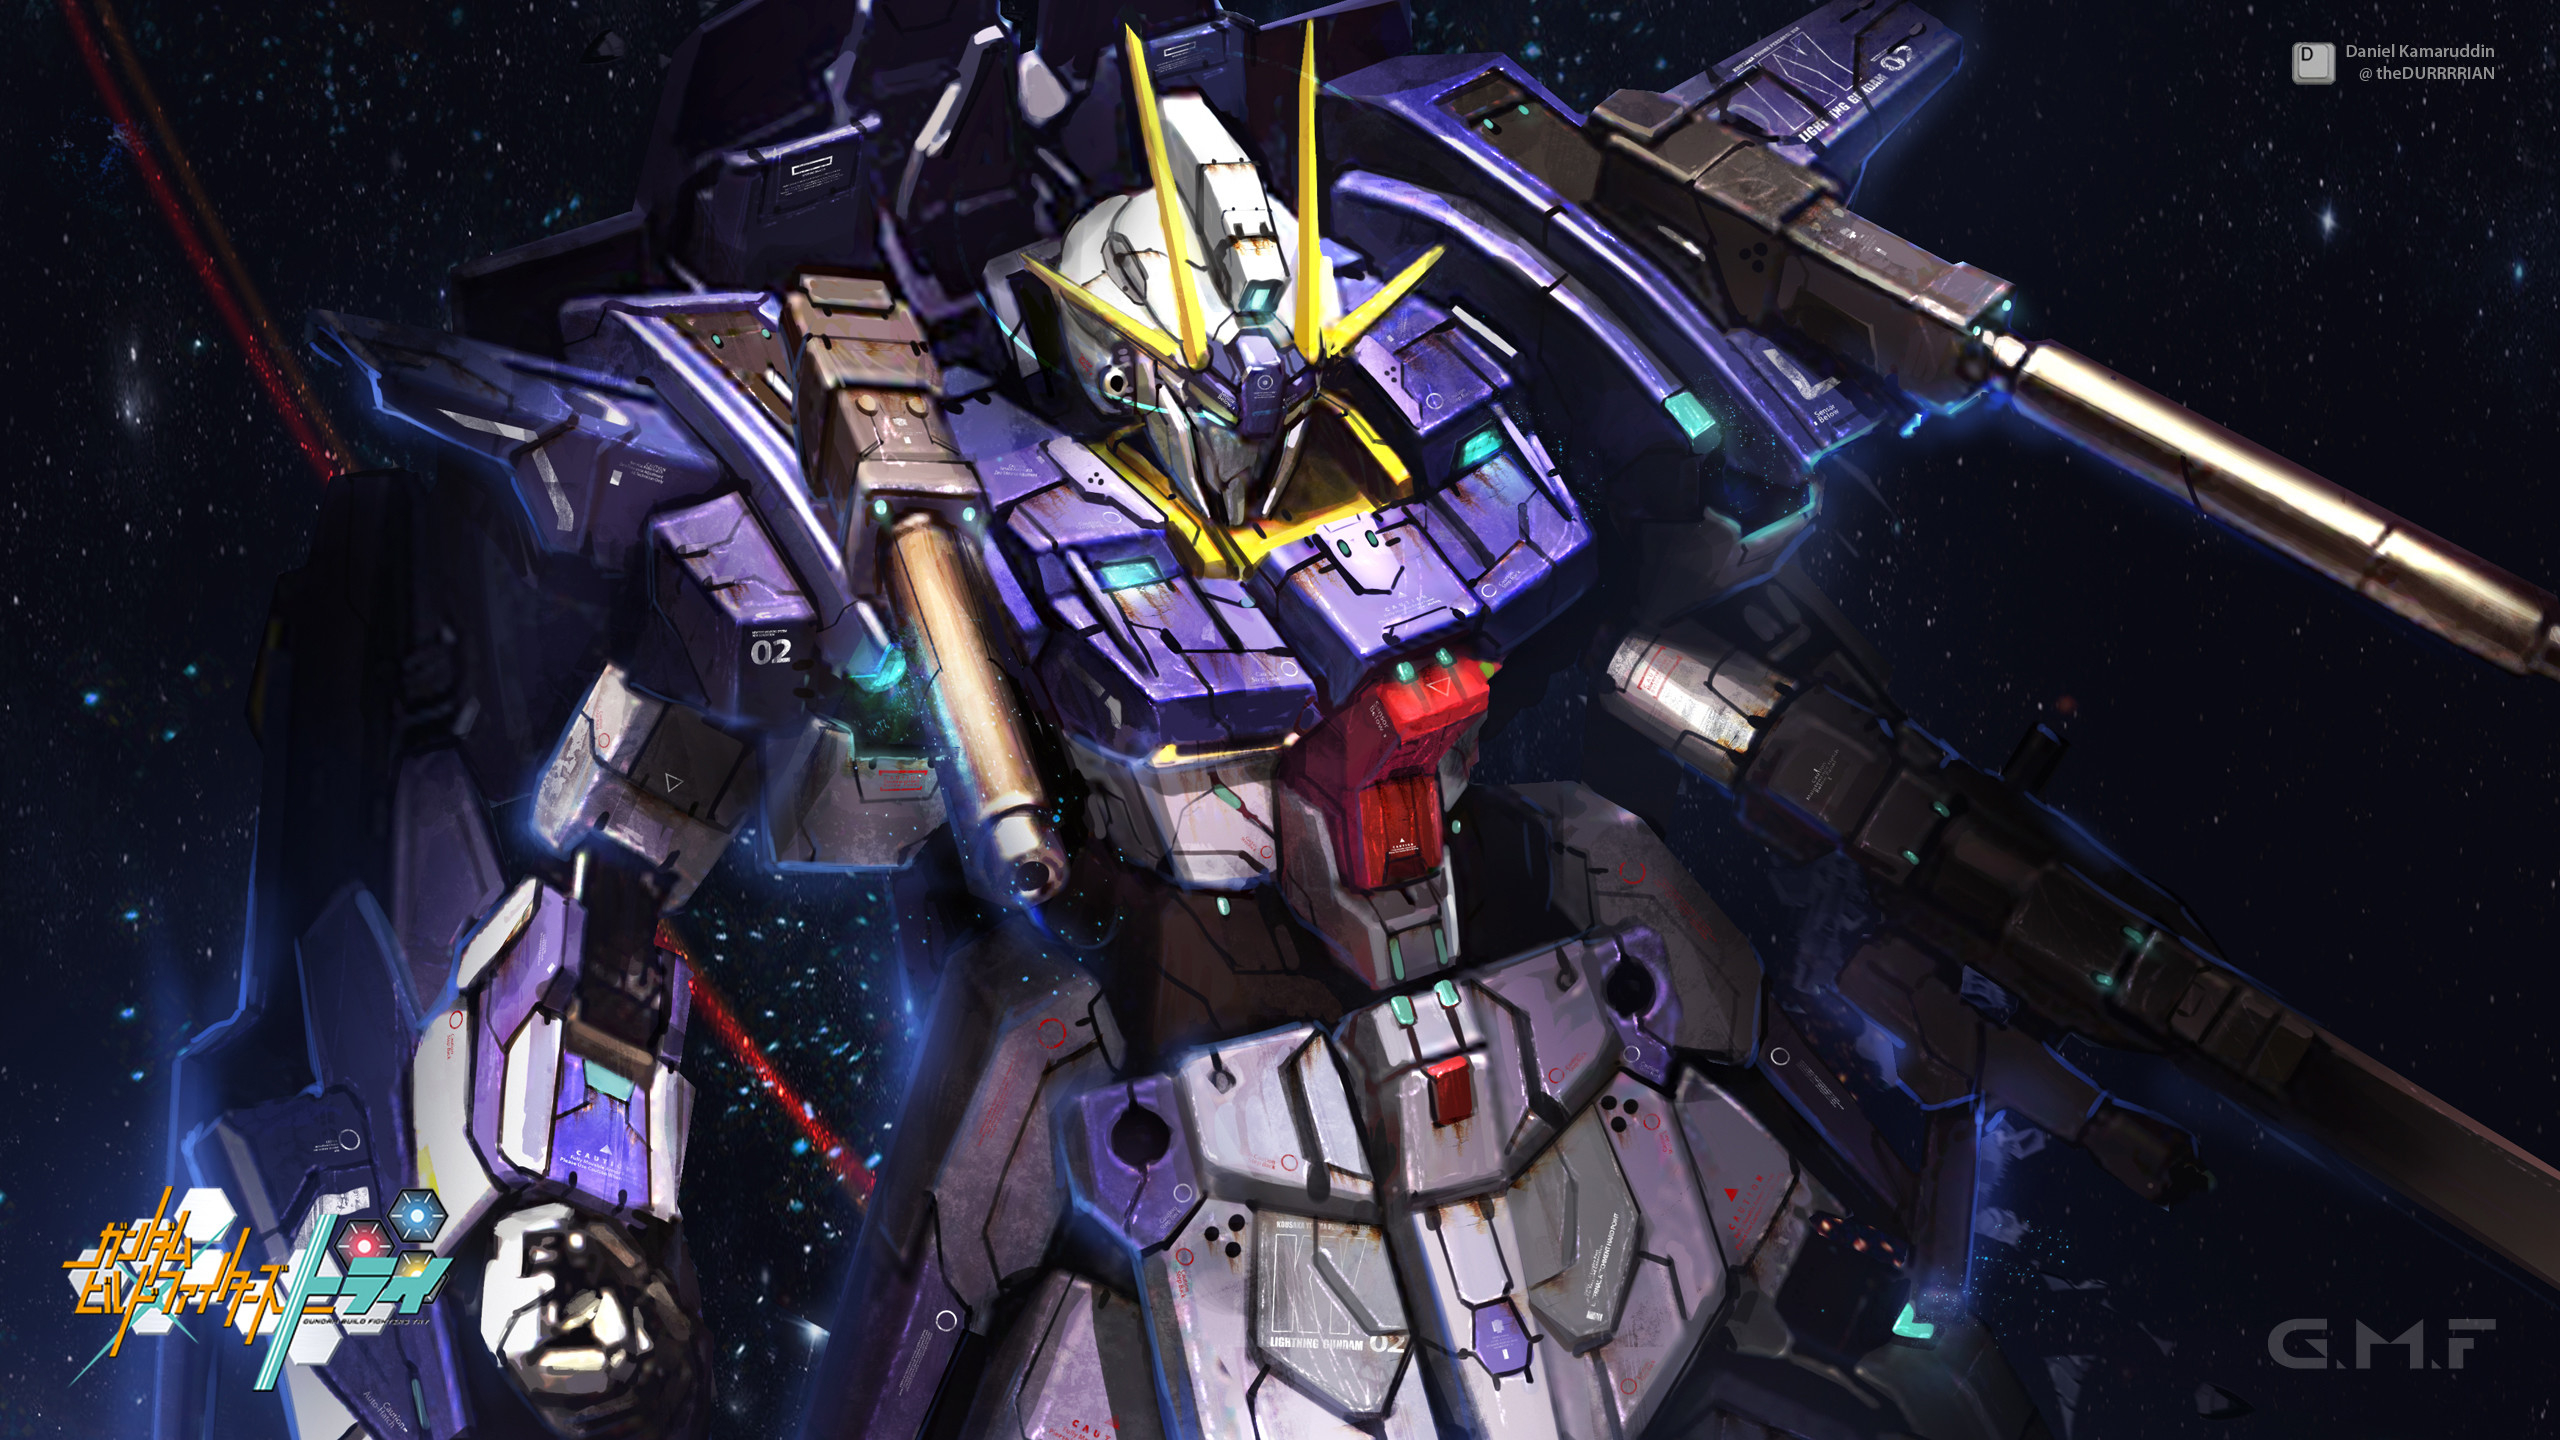 Gundam G Wallpaper